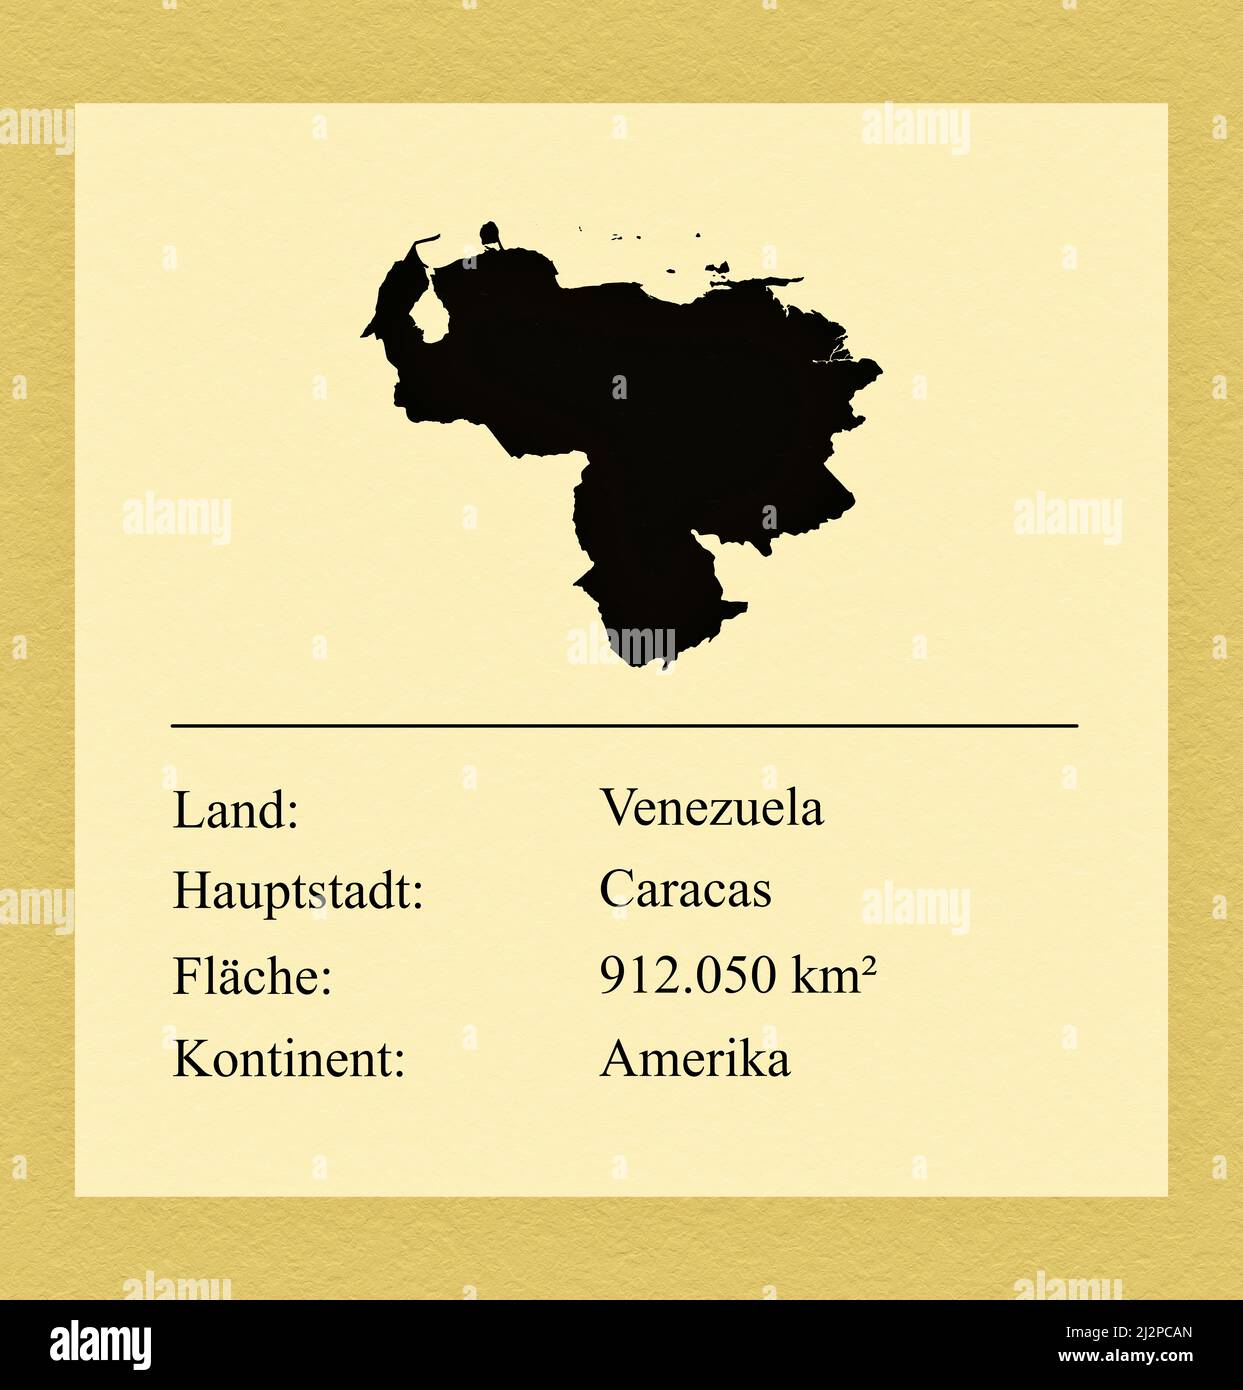 Umrisse des Landes Venezuela, darunter ein kleiner Steckbrief mit Ländernamen, Hauptstadt, Fläche und Kontinent Foto de stock